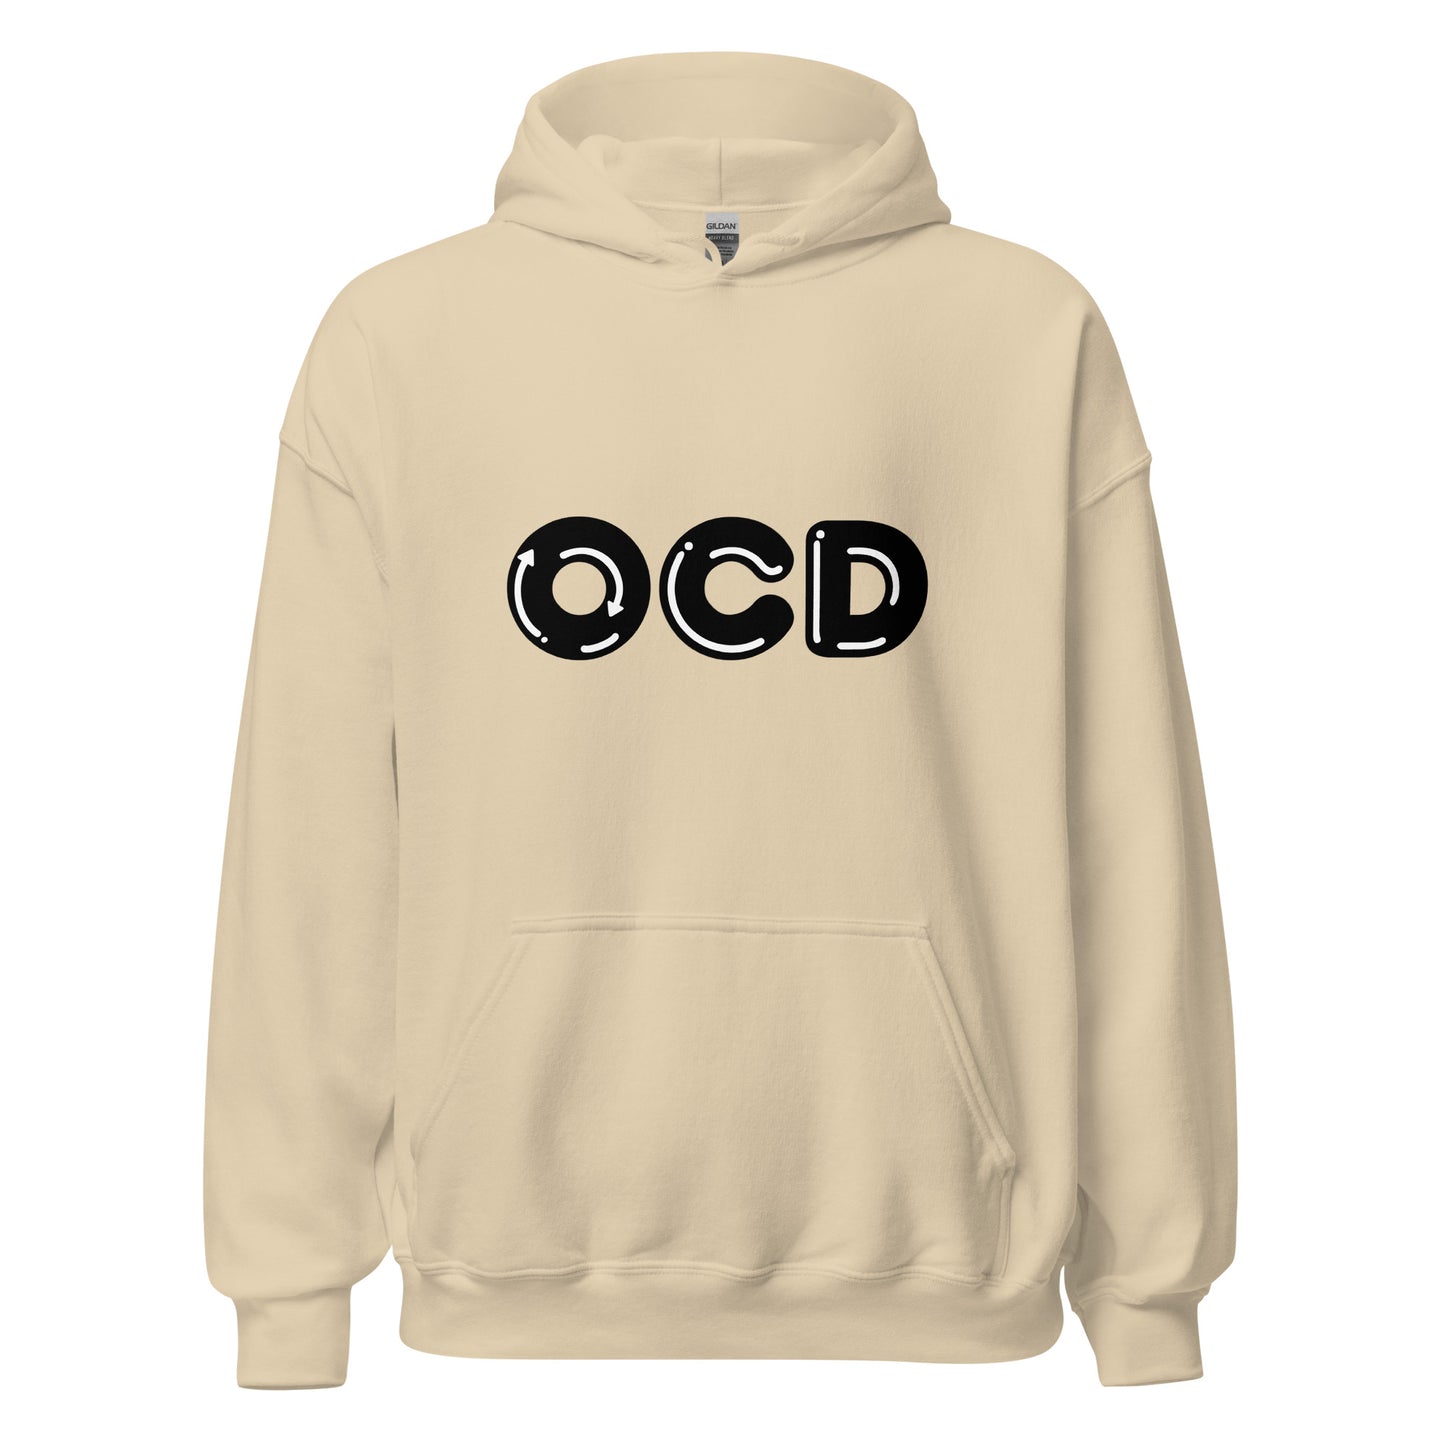 OCD Hoodie Pullover